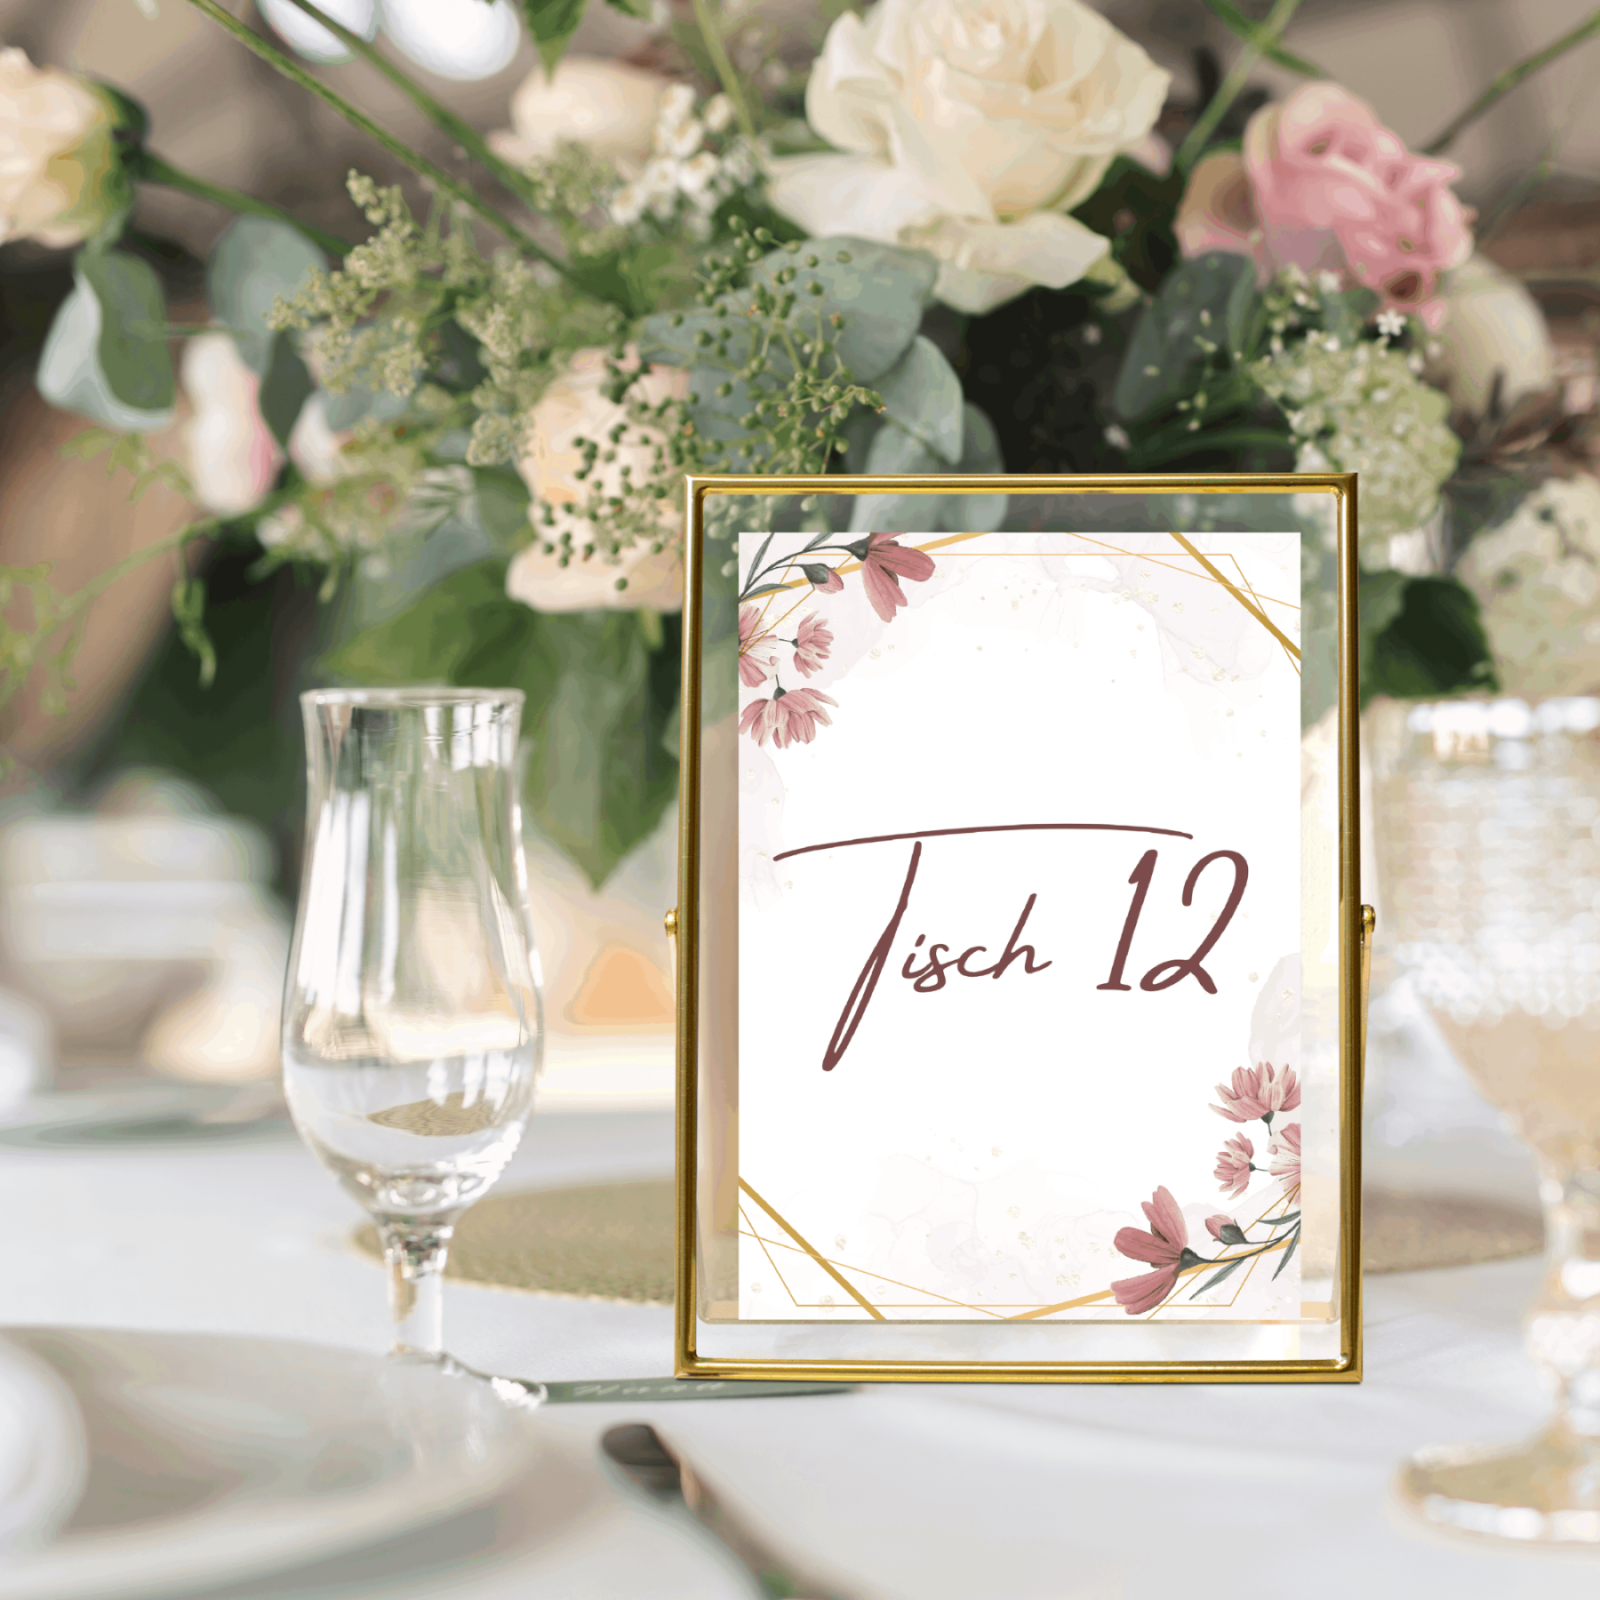 Tischnummern für die Hochzeit selber drucken - Digitale Vorlage zum Ausdrucken für die